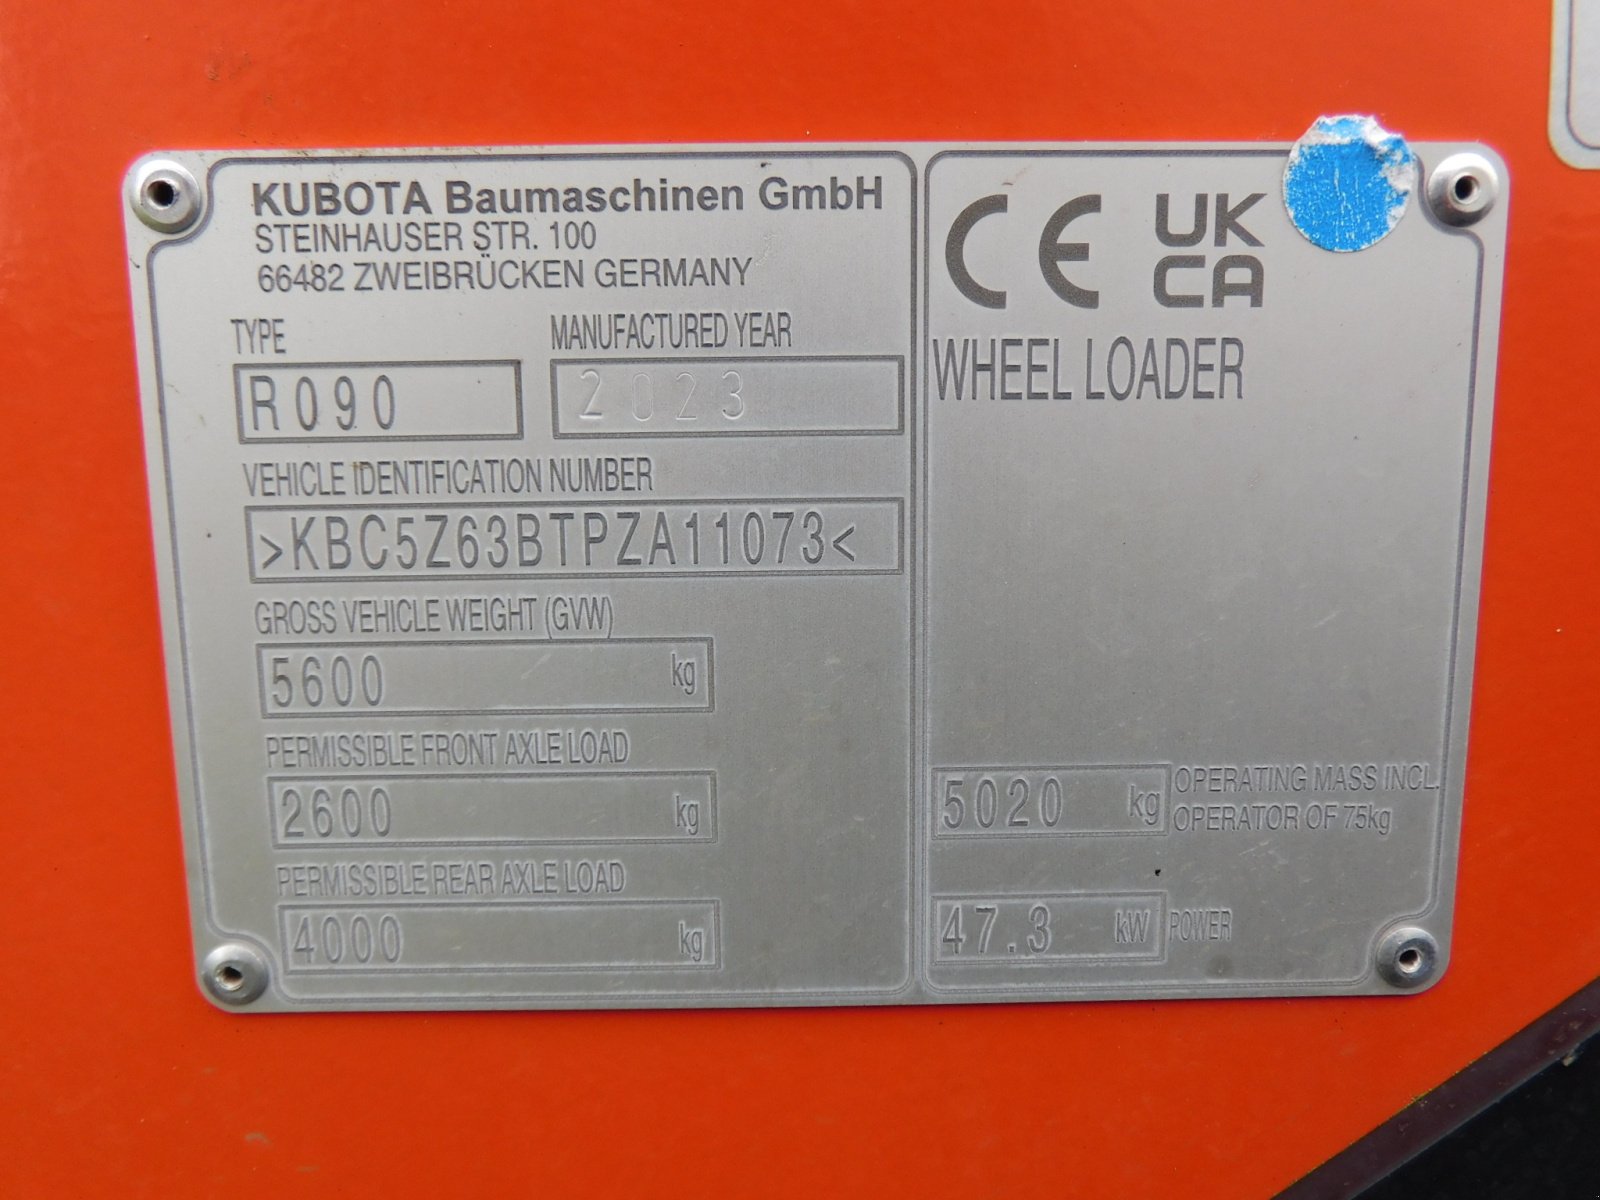 Radlader типа Kubota R090 *CRS *DPF *Schaufel 0,9m³ *Palettengabel 120cm *5020 kg Gewicht, Gebrauchtmaschine в Wagenfeld (Фотография 7)